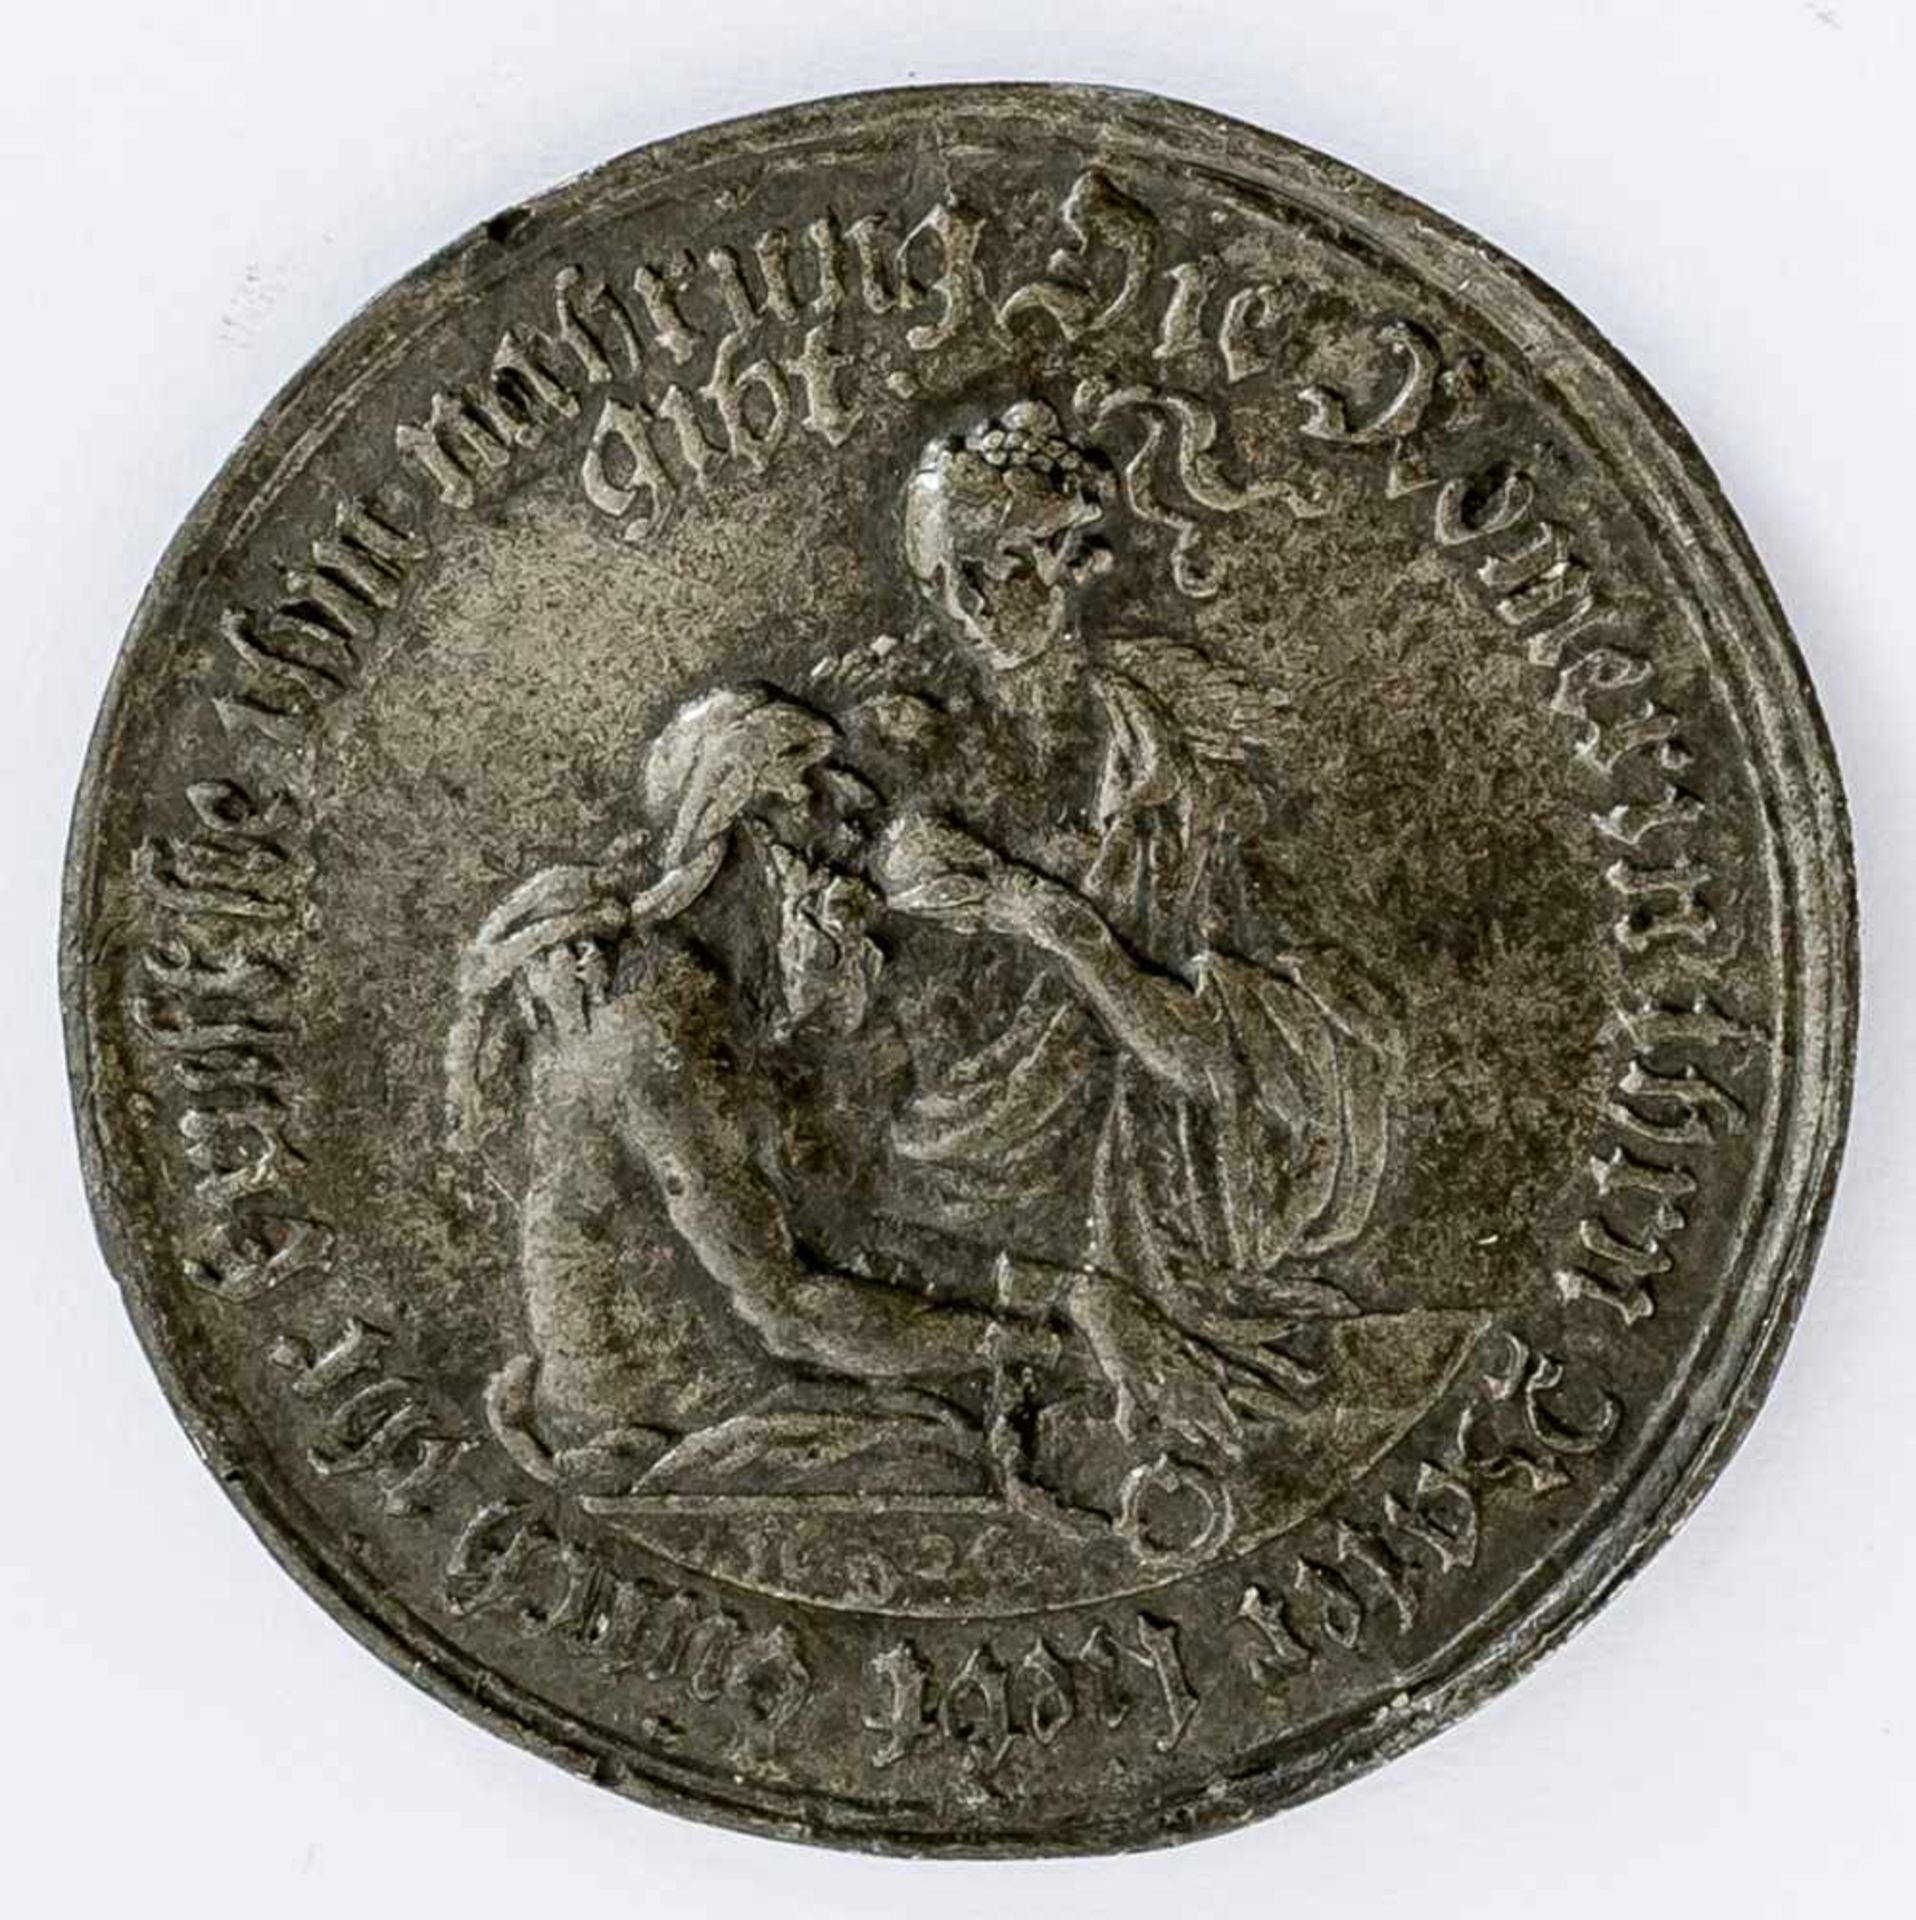 Römerin ihren Vater ernährend Turmthaler, 1626 Durchmesser 4,4 cm Roman feeding her father,